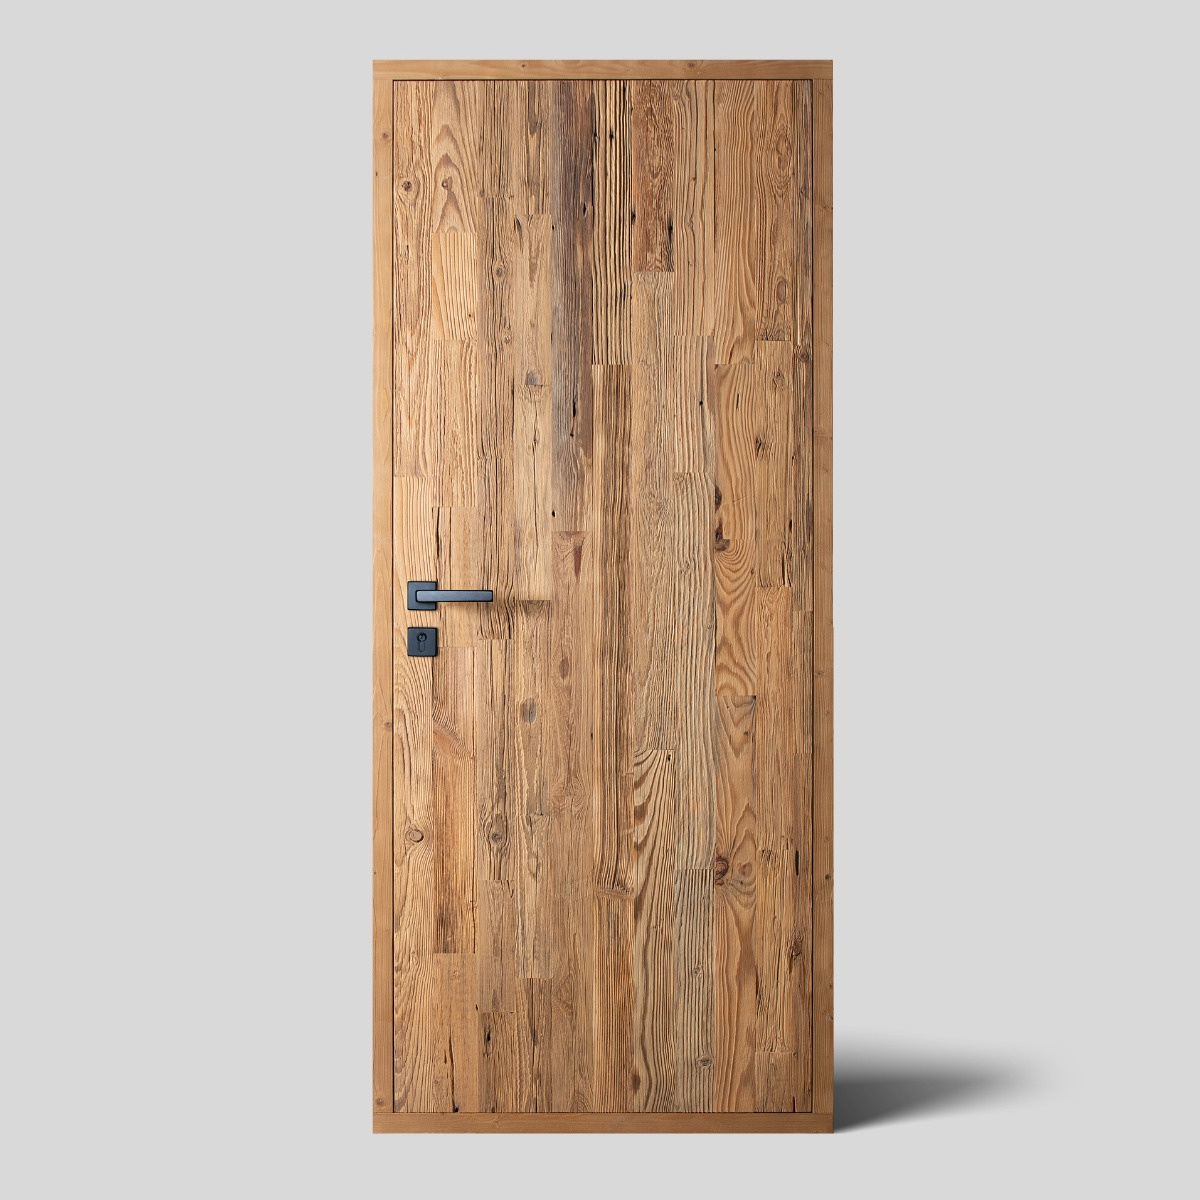 Weathered wood door